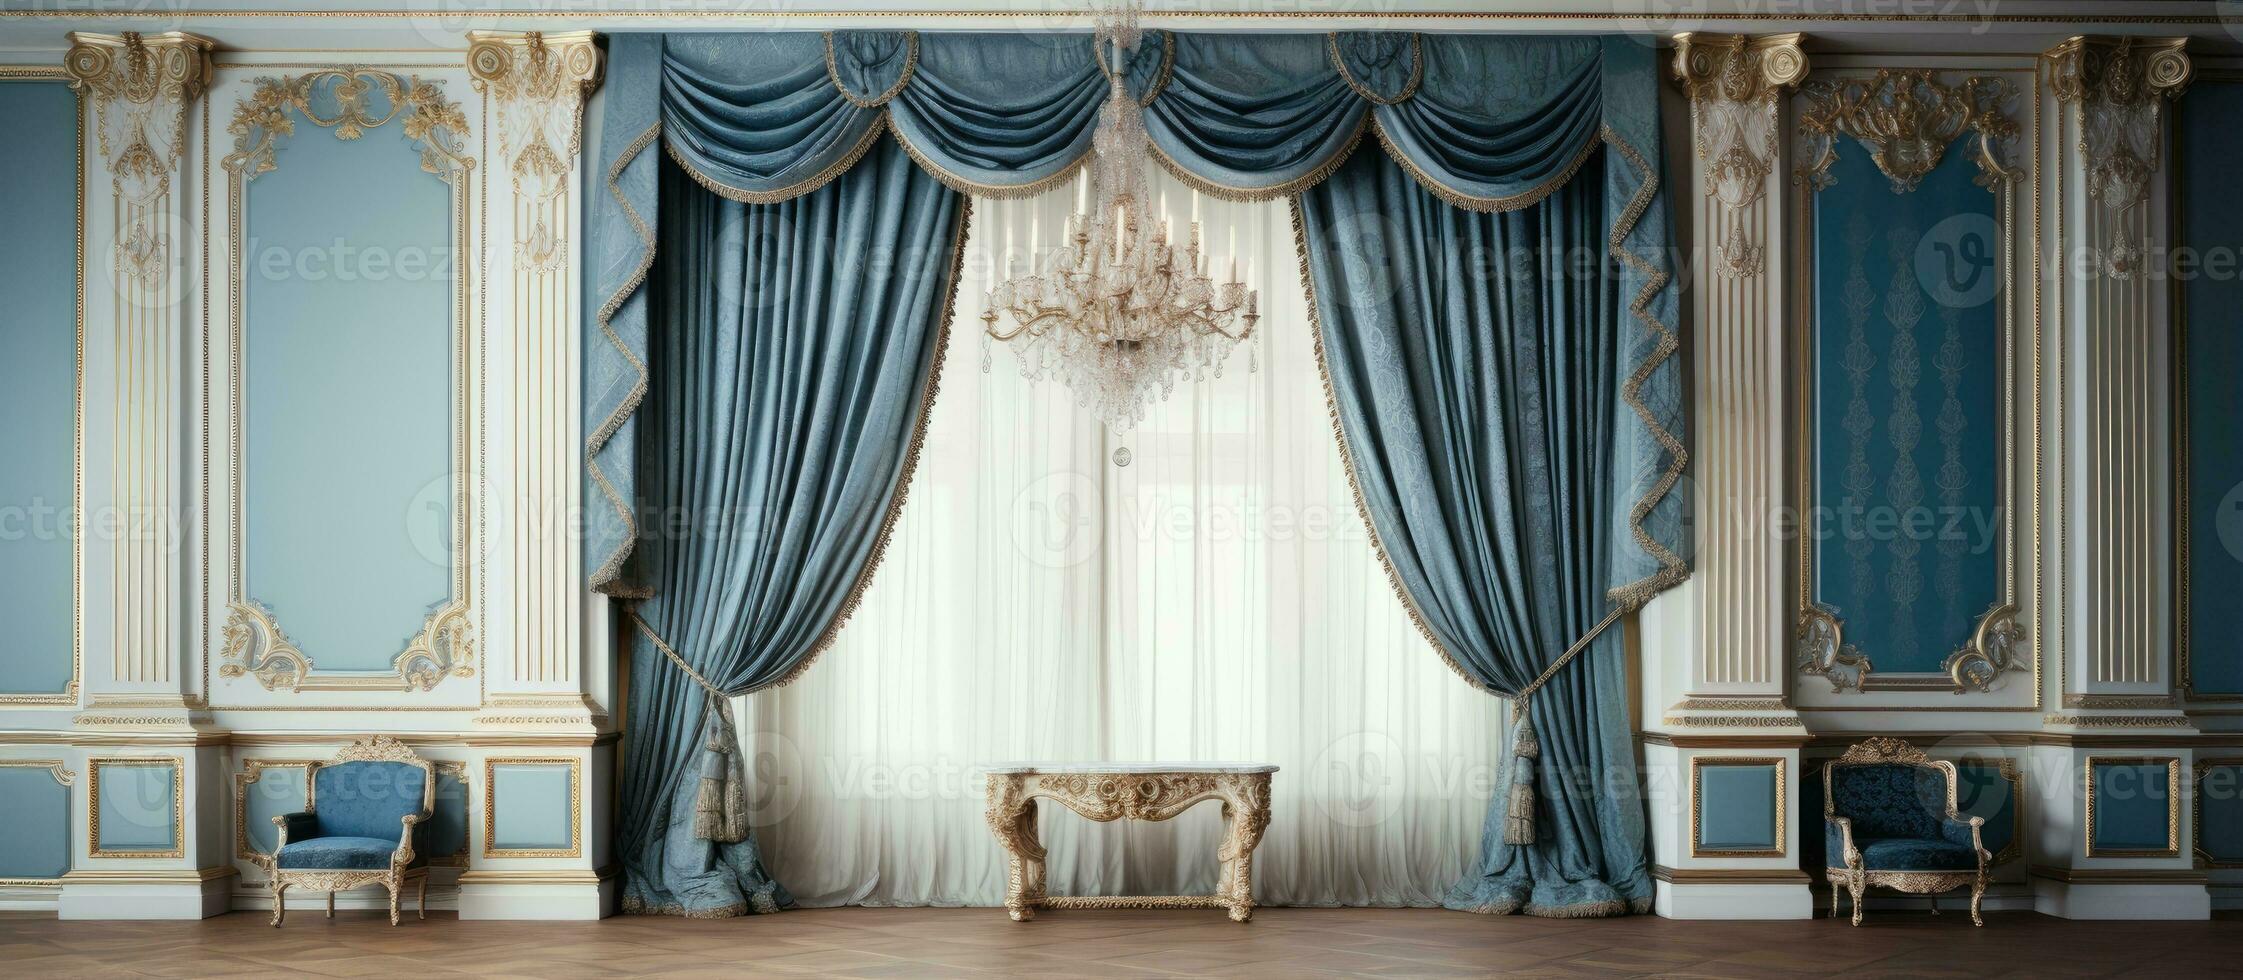 dekorieren das Leben Zimmer mit klassisch Palast Stil Blau Vorhänge und passend Zubehör foto